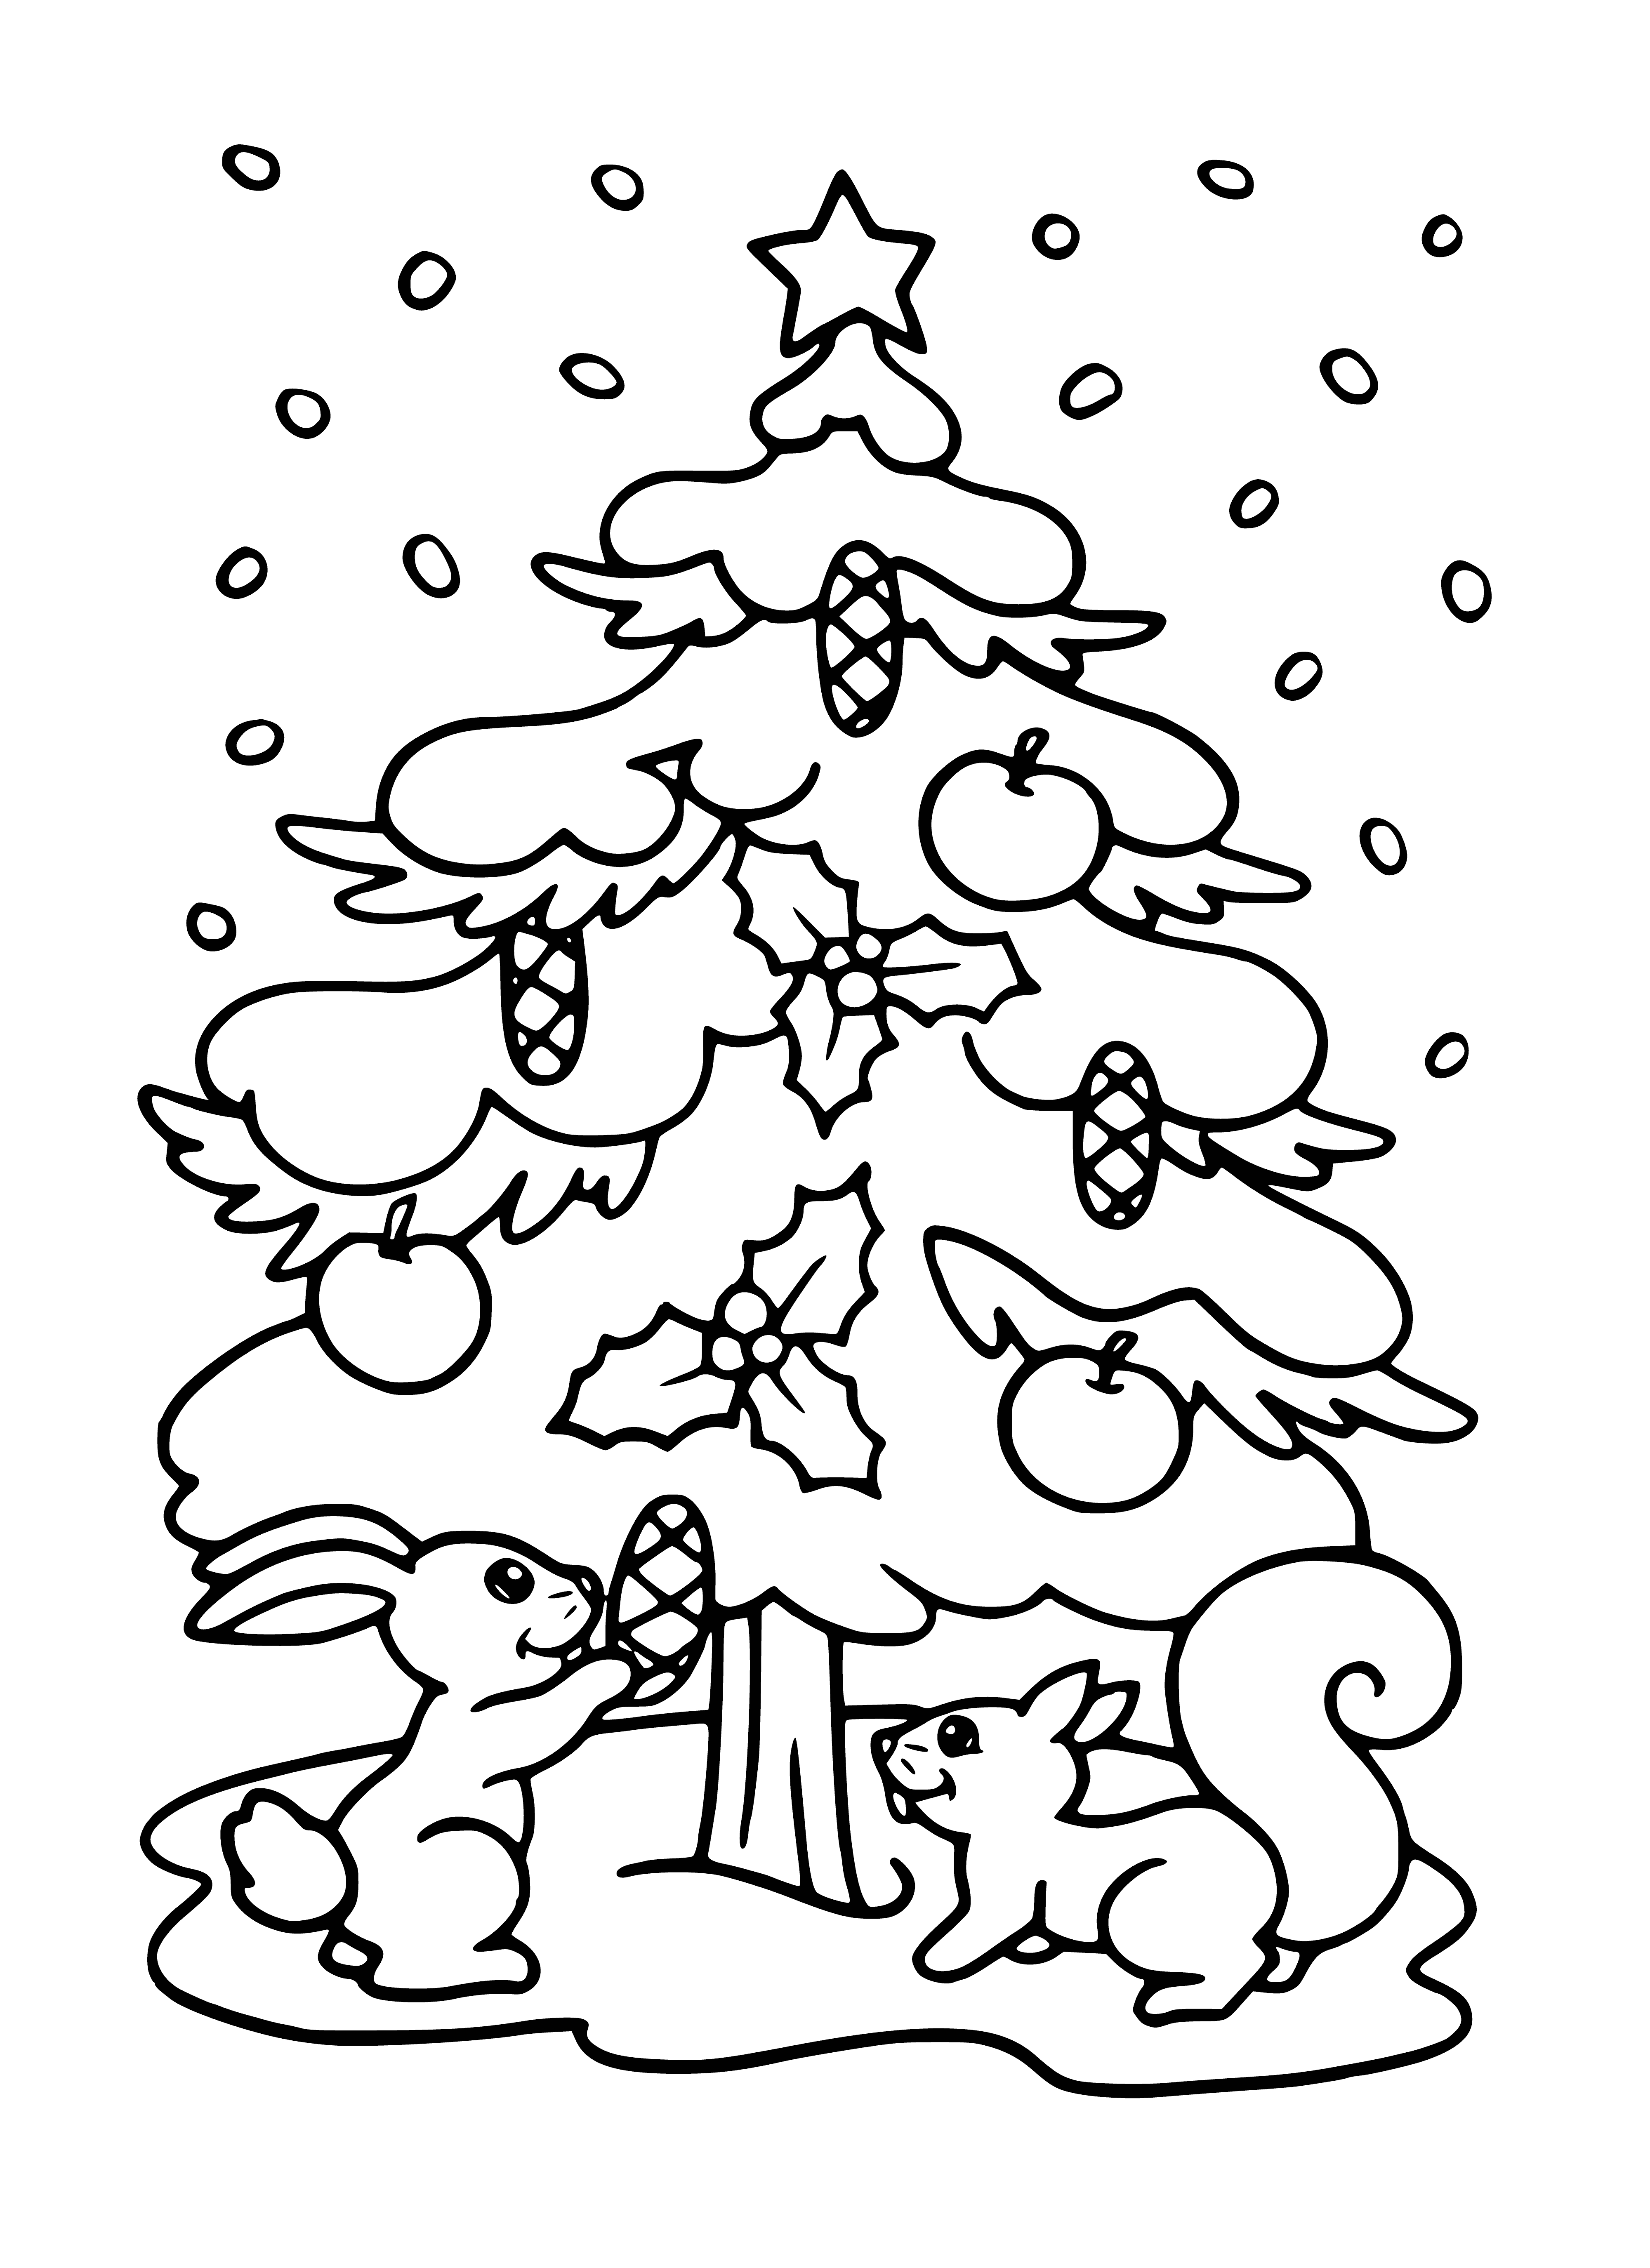 Kerstboom en eekhoorns kleurplaat